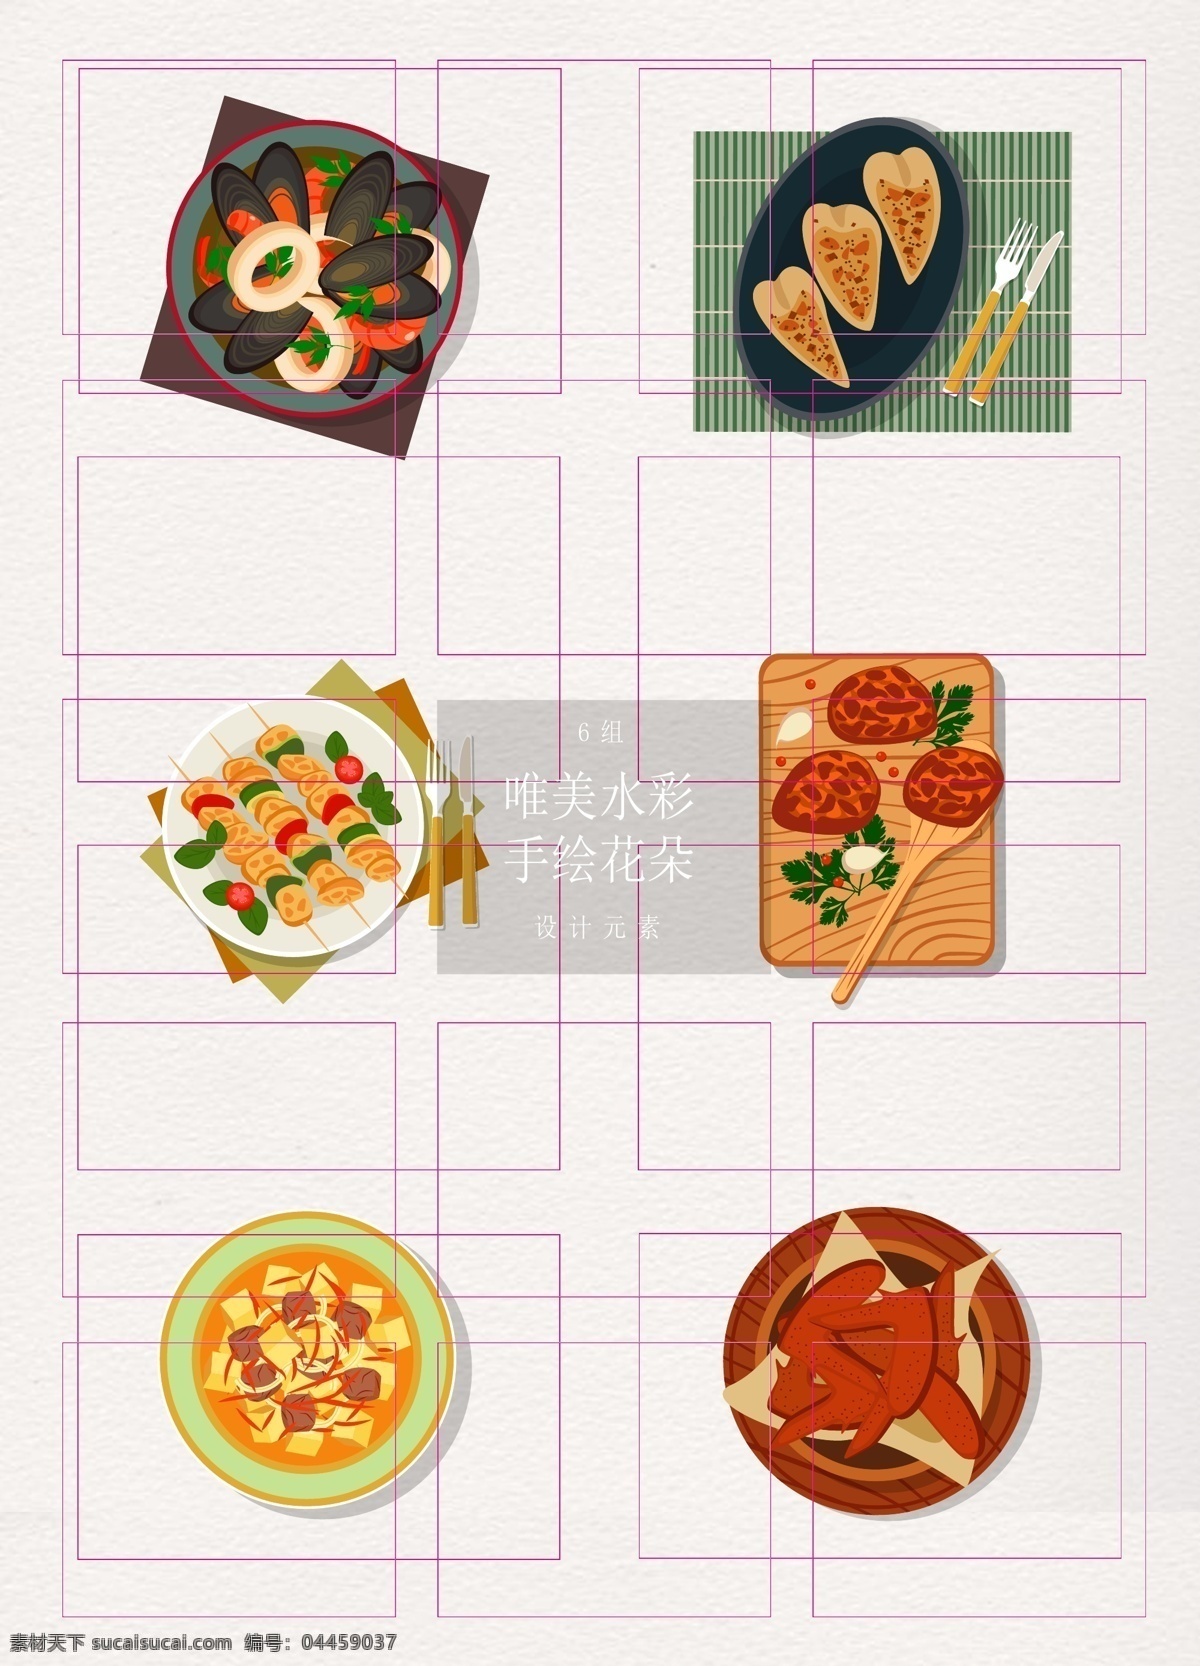 手绘 美味 中西餐 食物 元素 卡通 矢量图 西餐 美食 牛排 中餐 蛤蜊 烤串 蘑菇 烤翅